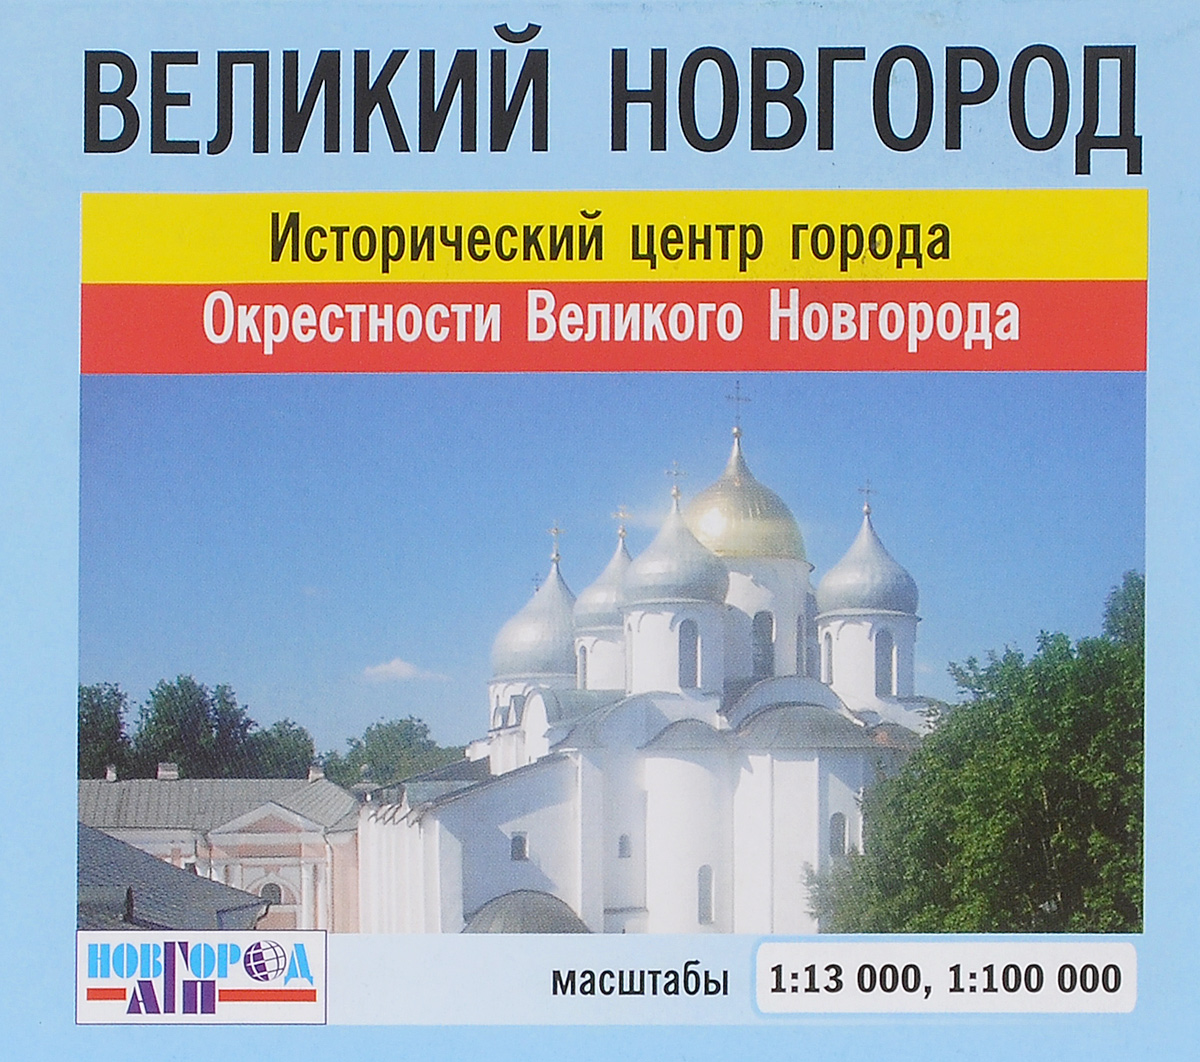 Великий Новгород мини-карта (исторический центр и окрестности) 1:13 000, 1:100 000 развивается неумолимо приближаясь